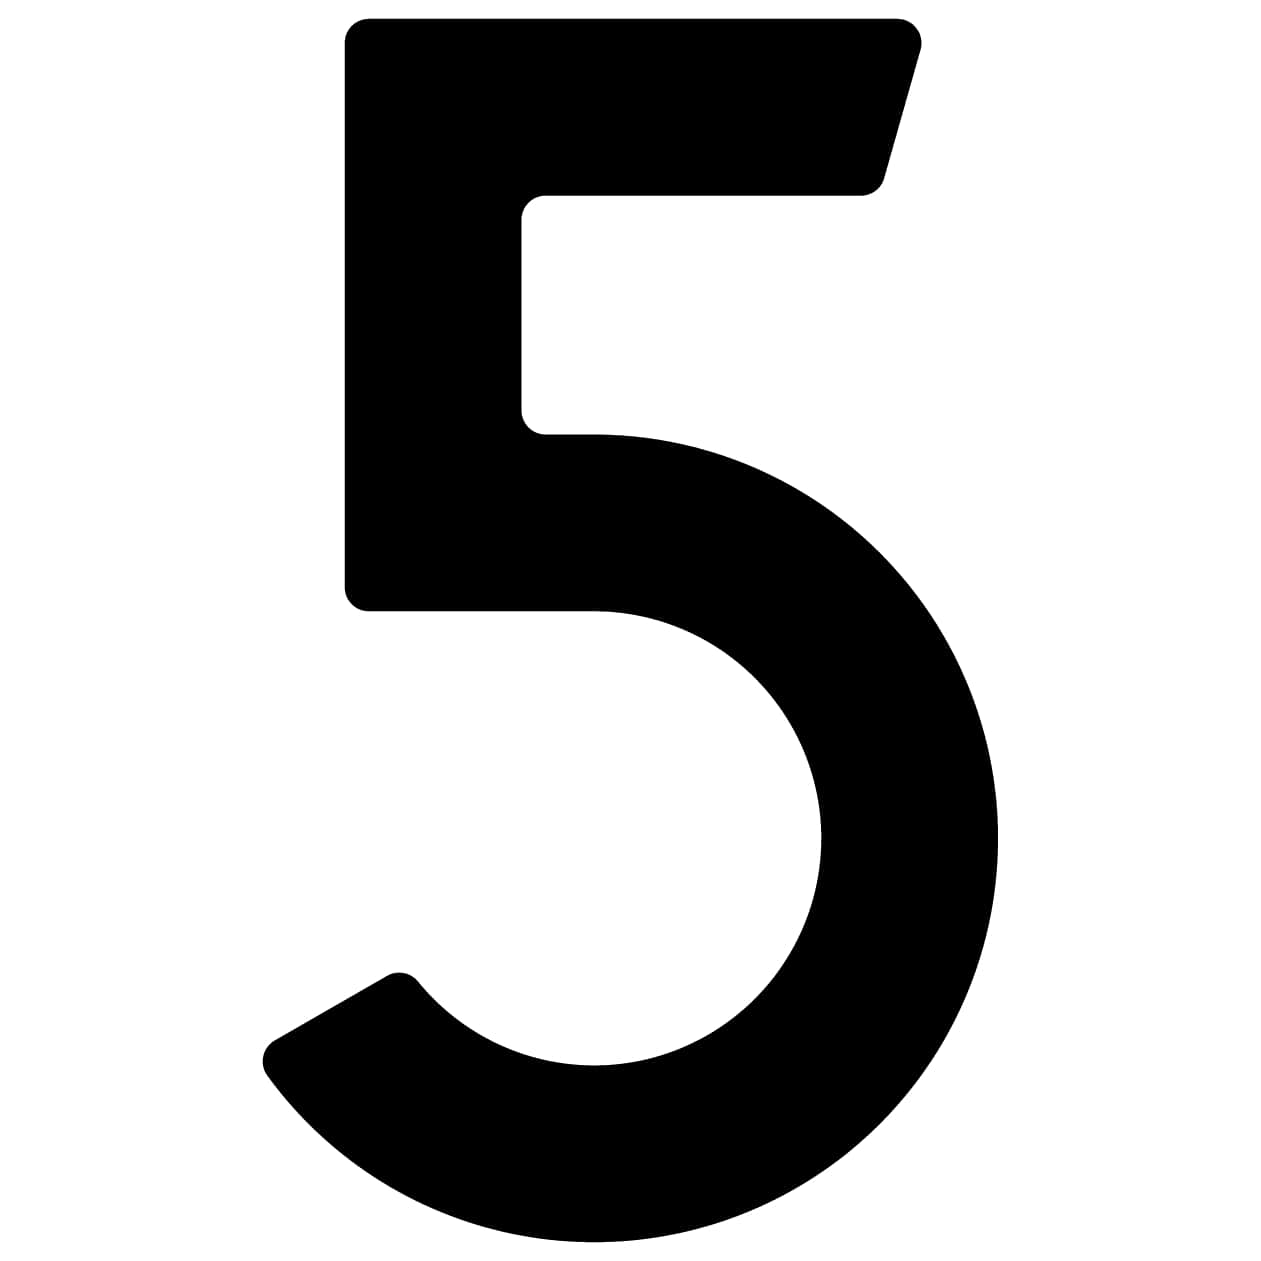 Samoprzylepny numer domu „5” - 40 mm w kolorze czarnym